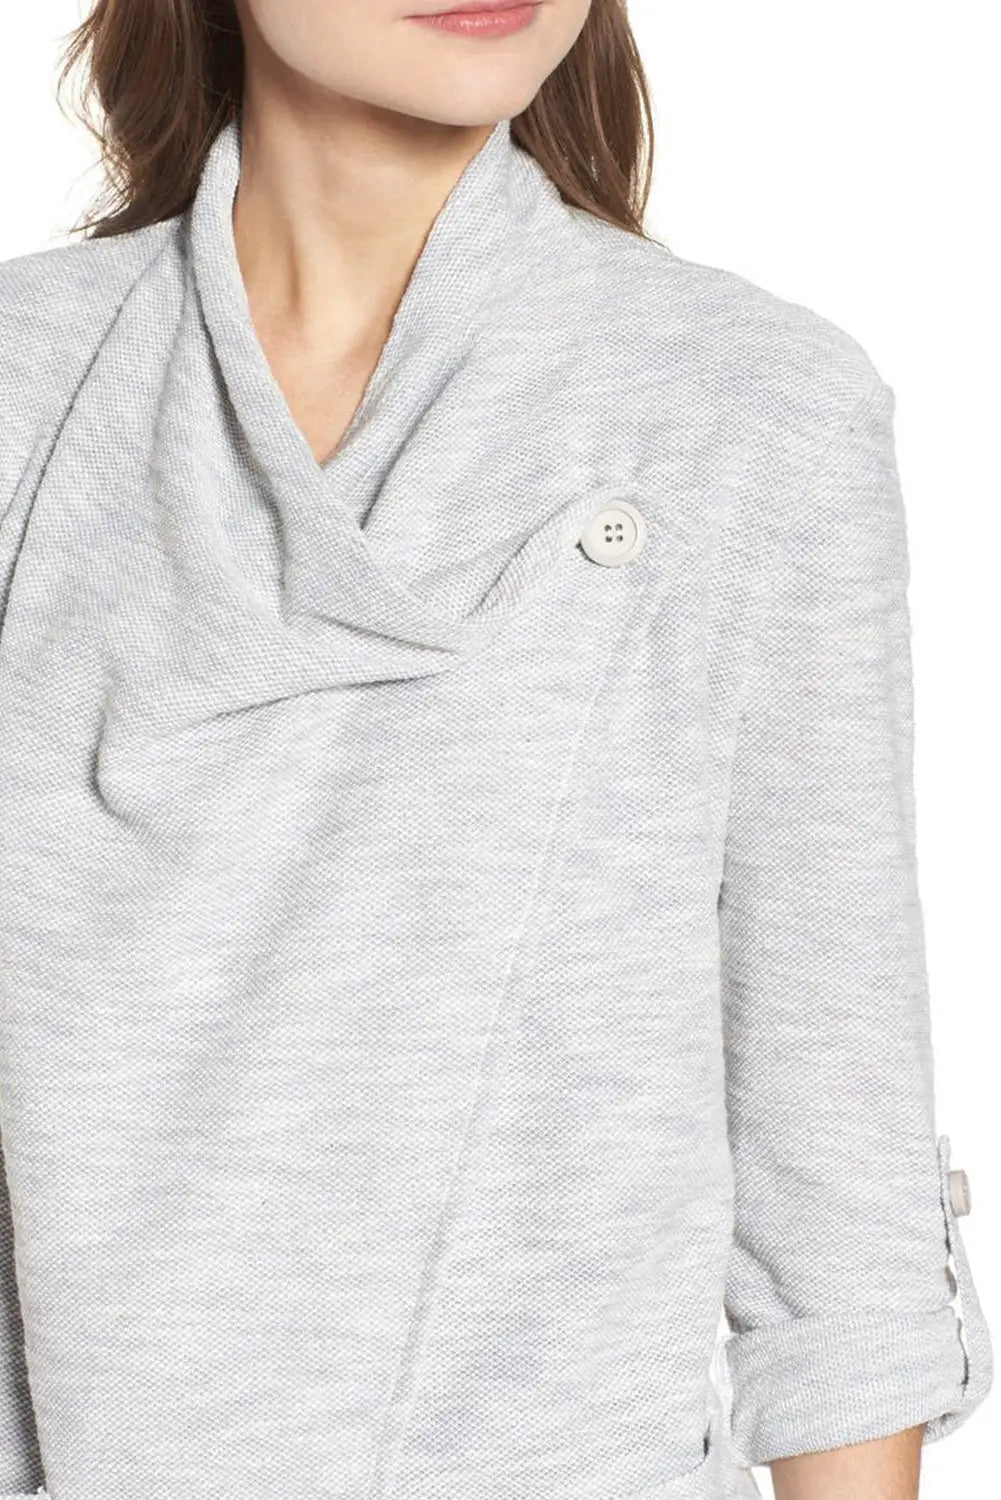 Gray drape front knit jacket - jackets